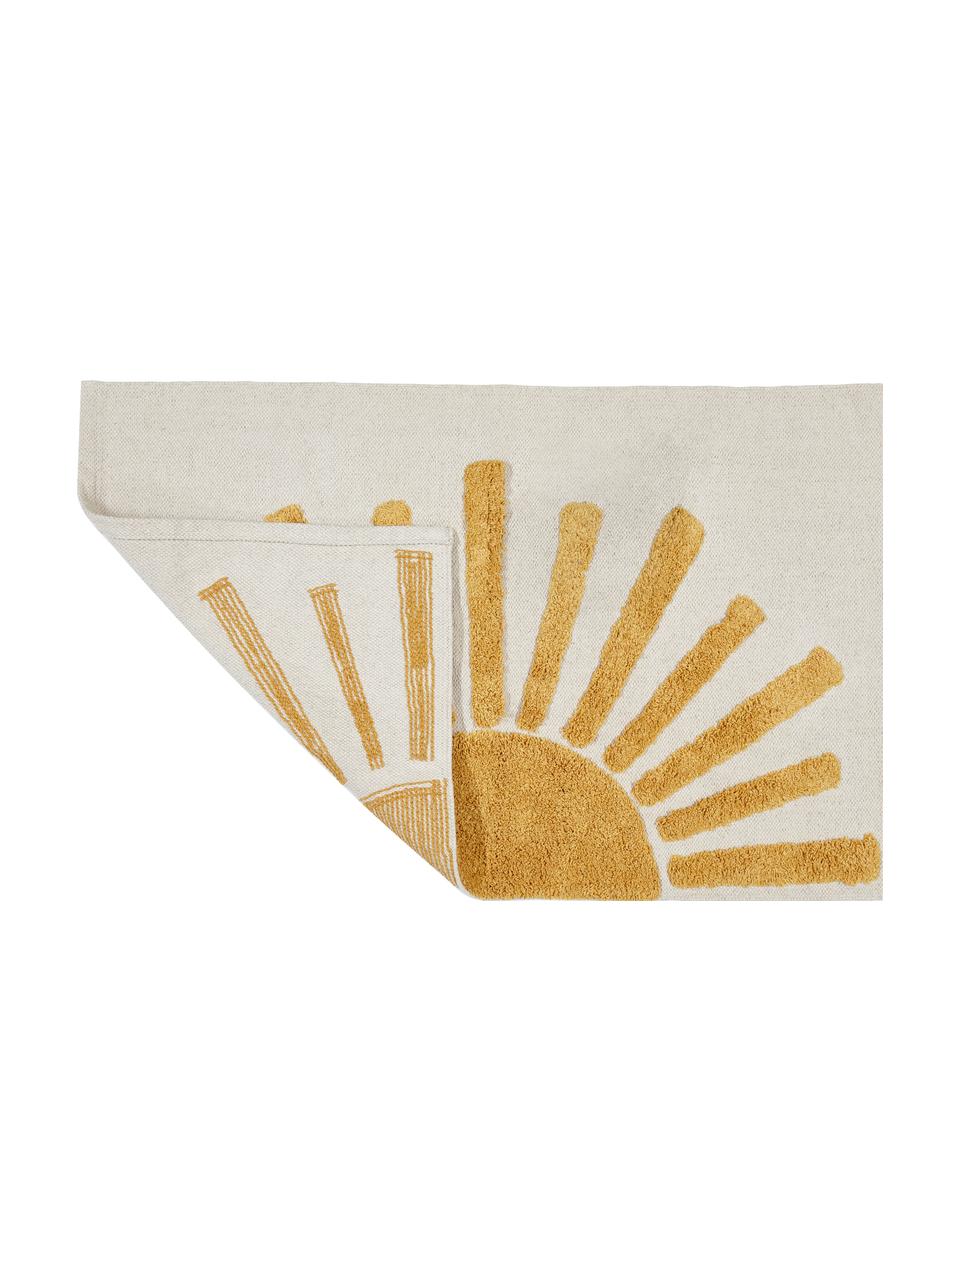 Badmat Sun met hoog-laag structuur, 100% katoen, Lichtbeige, zonnengeel, B 60 x L 90 cm